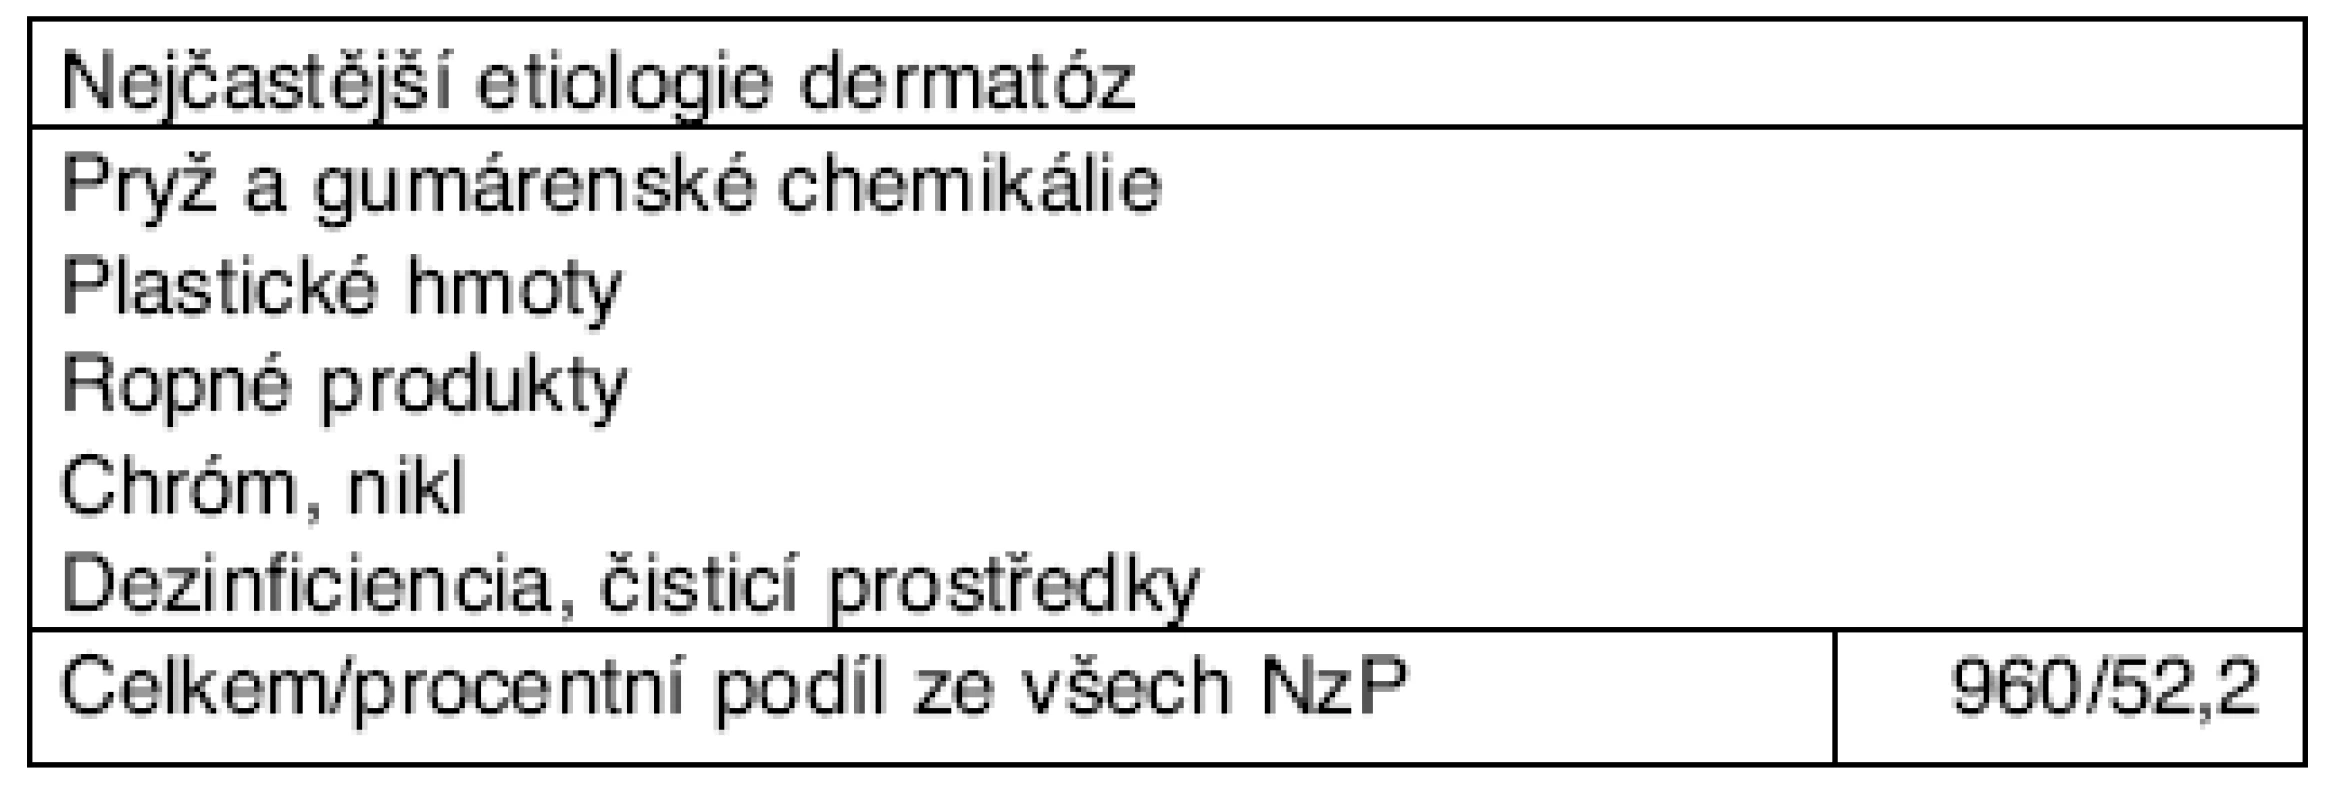 Profesionální onemocnění u žen hlášená v ČR v letech 2001–2006 podle kapitol seznamu nemocí z povolání – kapitola IV.*